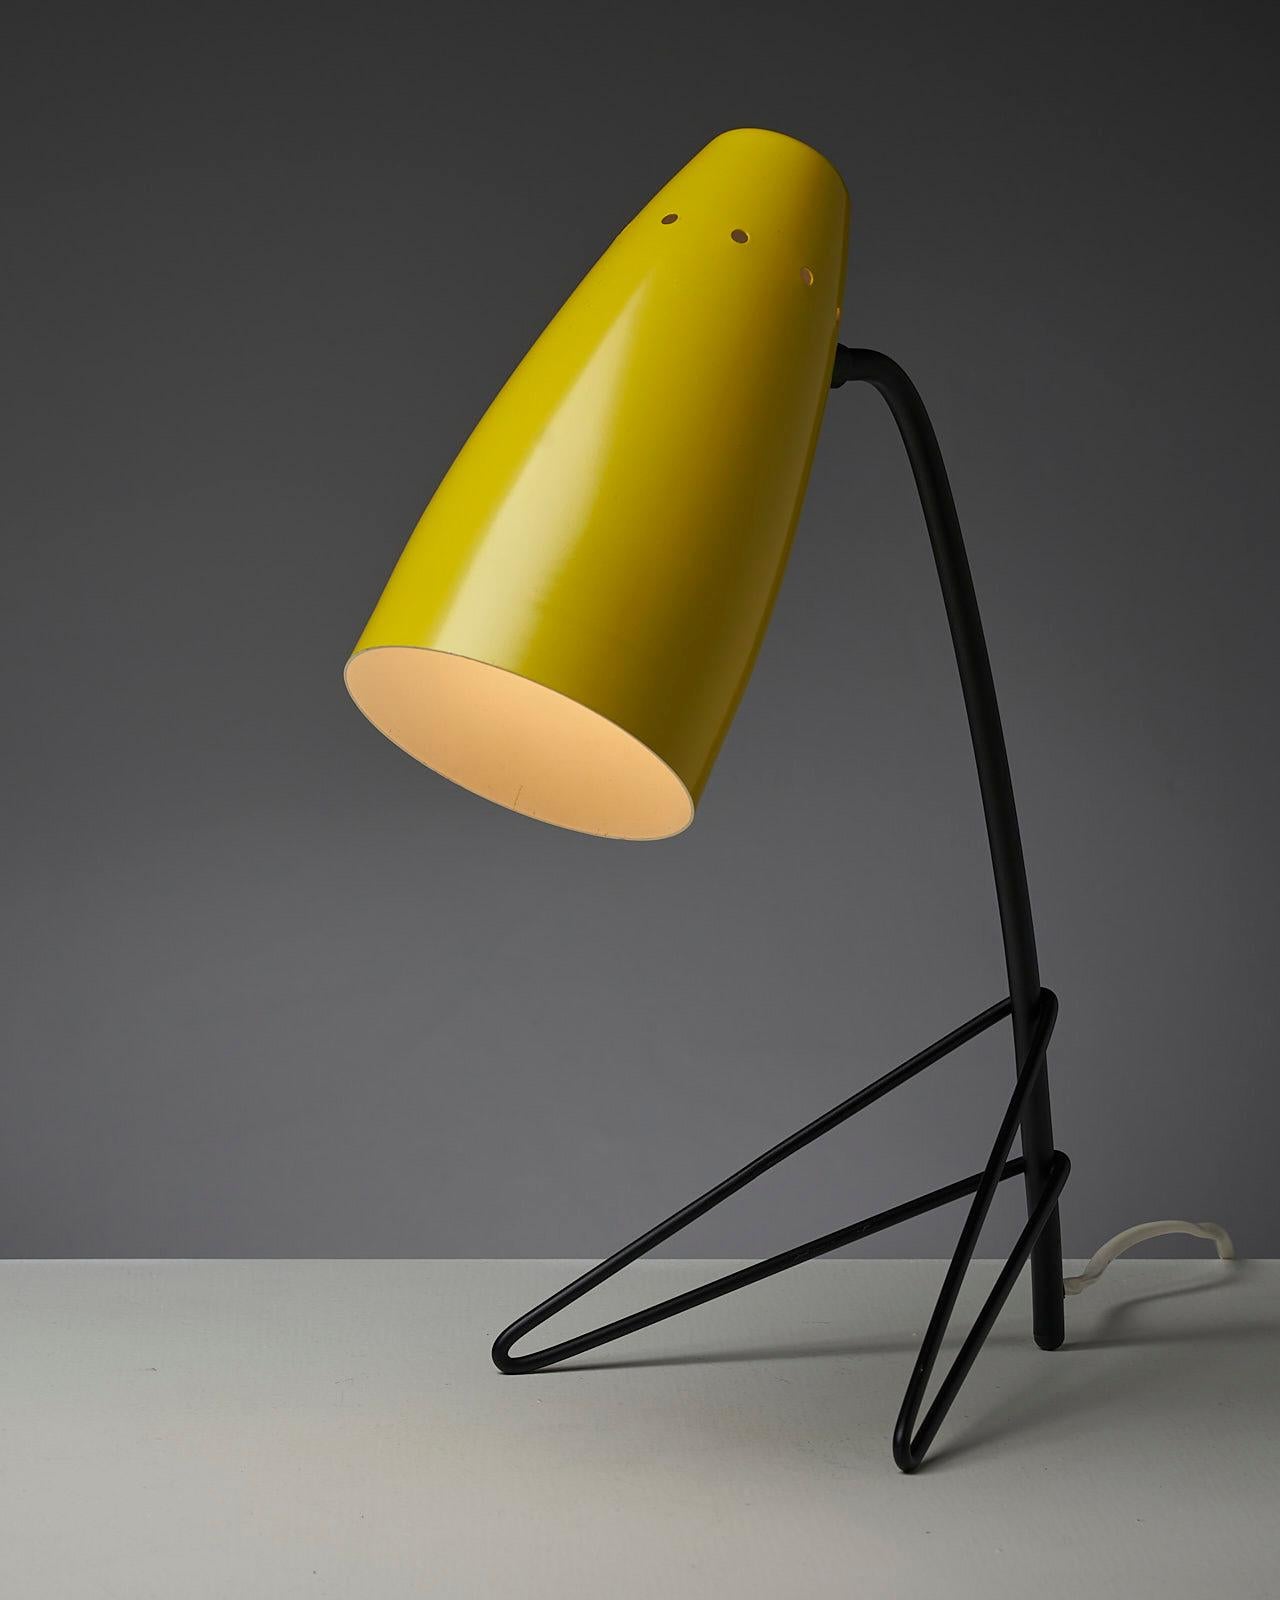 La Yellow Grasshopper est une lampe de table ludique et accrocheuse qui présente un design unique et distinctif. L'abat-jour en métal est laqué dans un jaune vibrant, qui ajoute une touche de couleur à n'importe quelle pièce. Le socle tripode avec